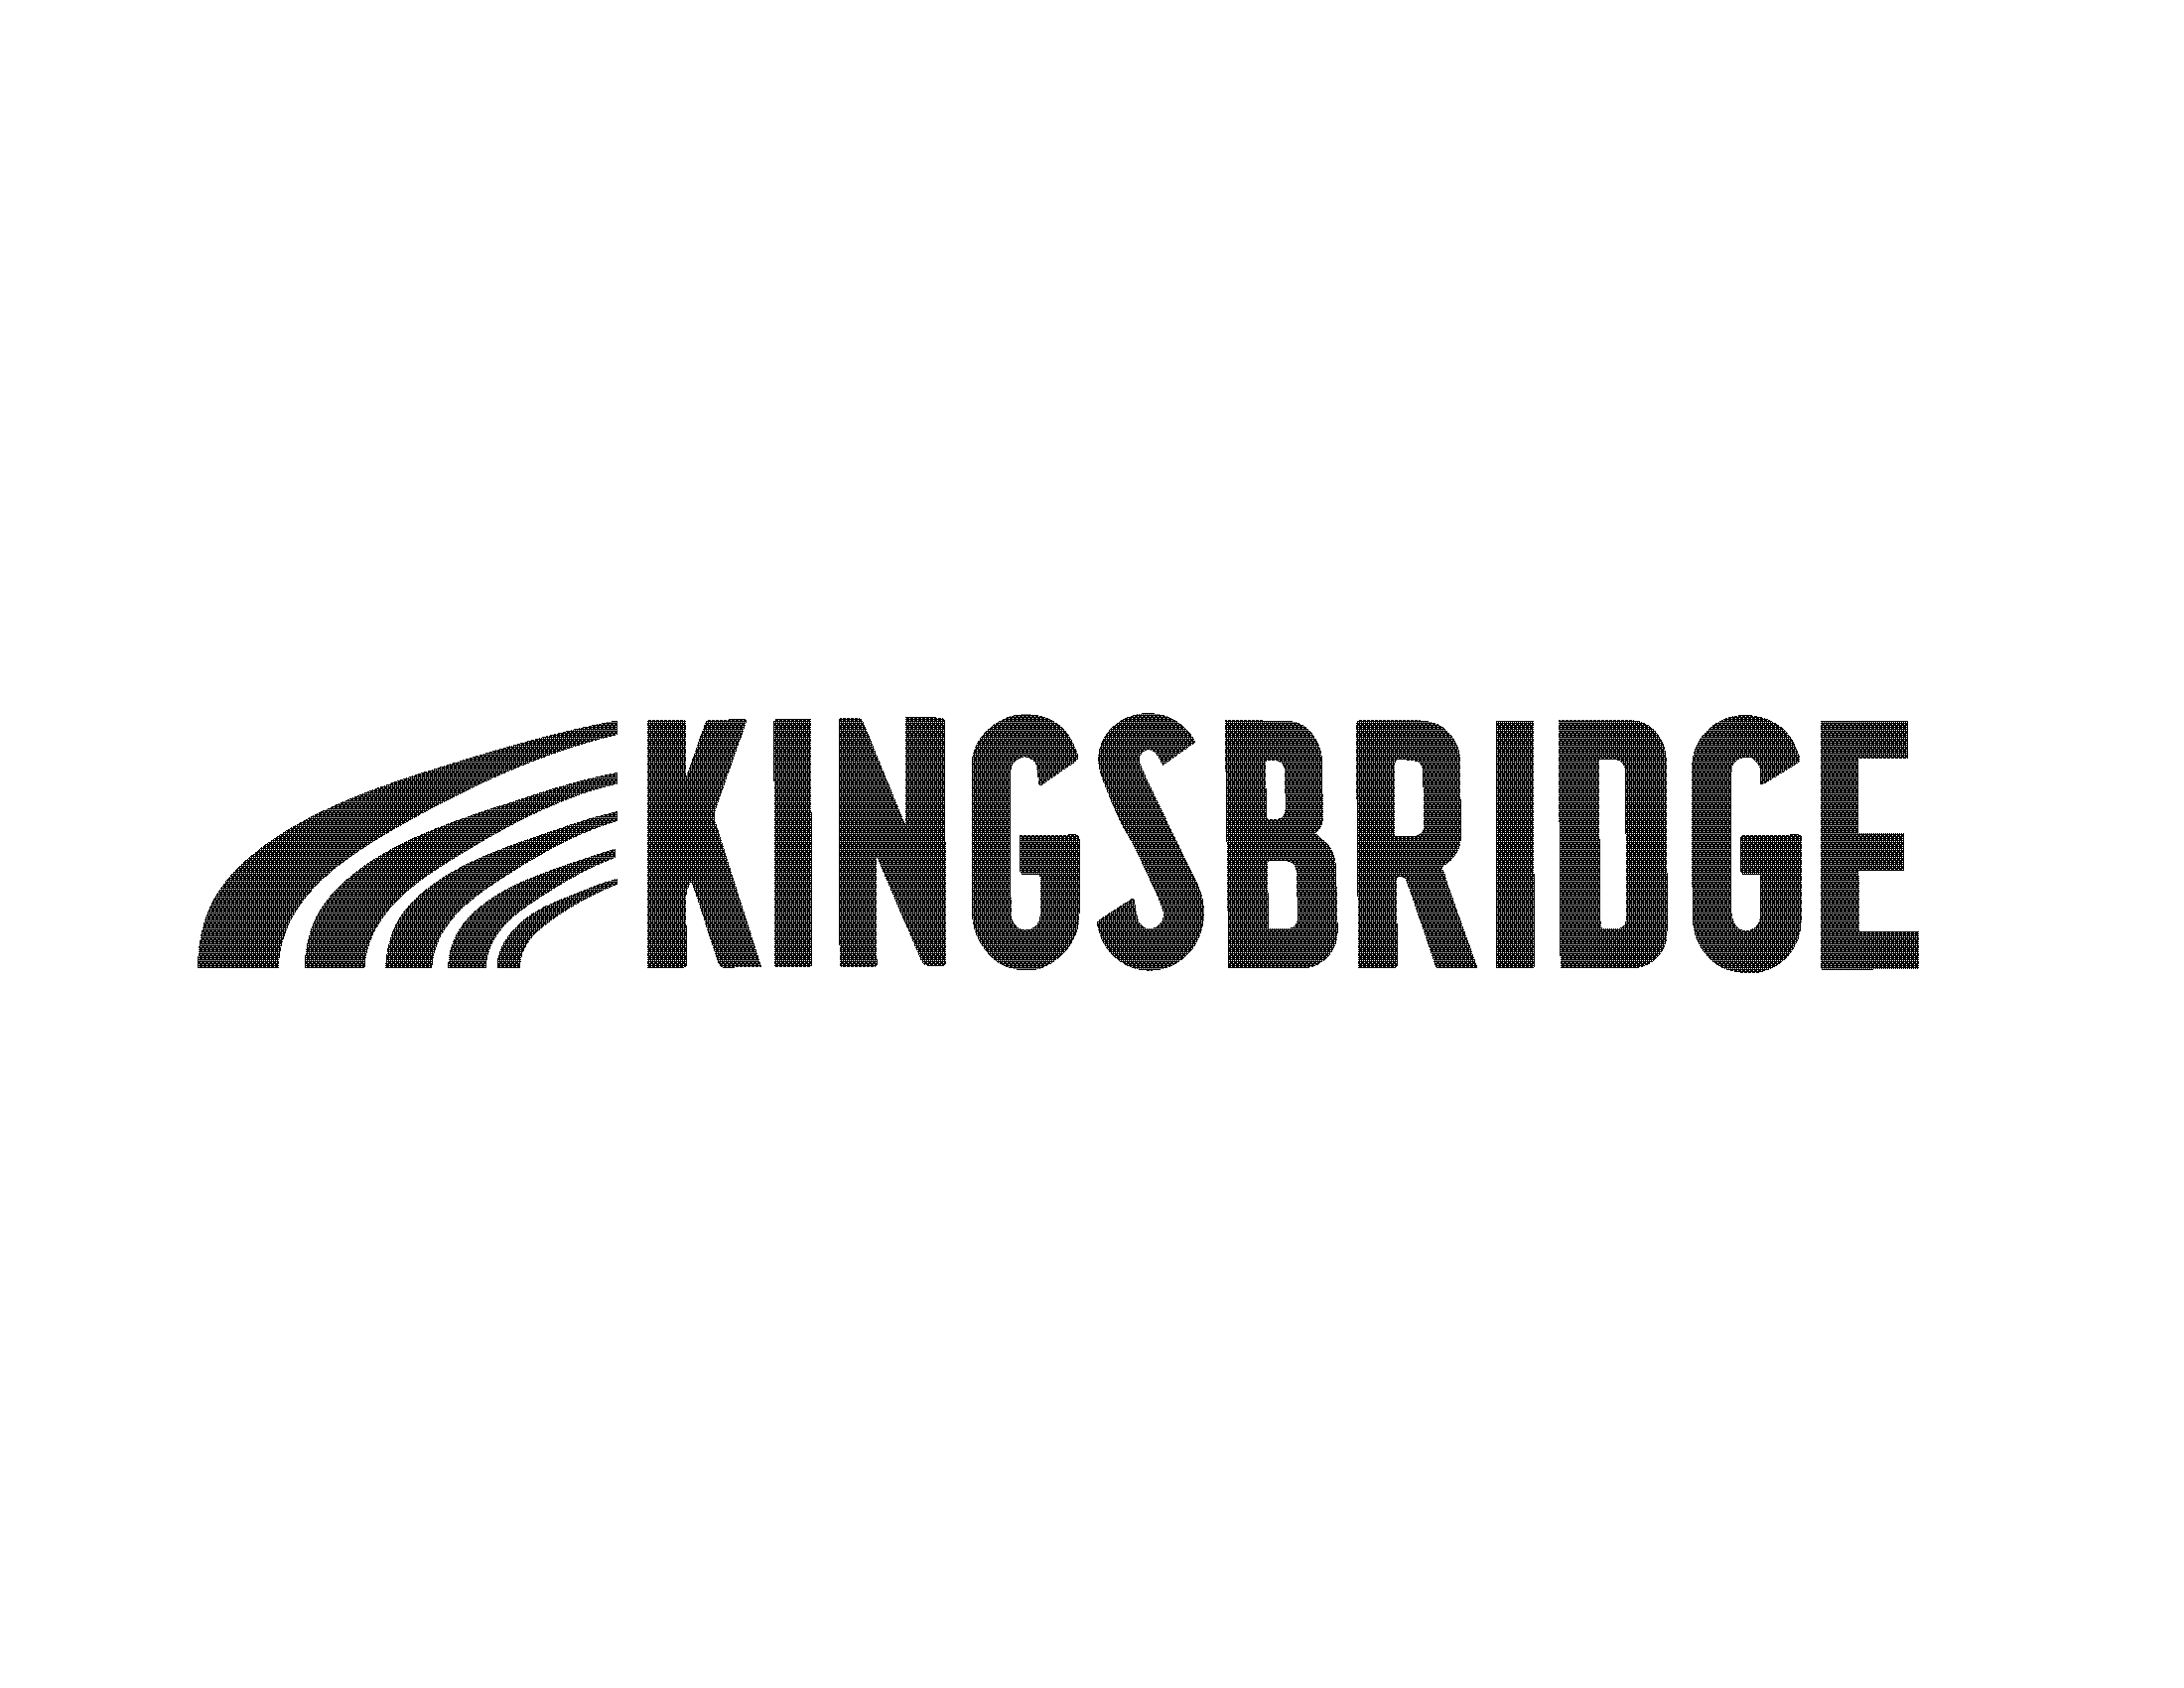 kingsbridge